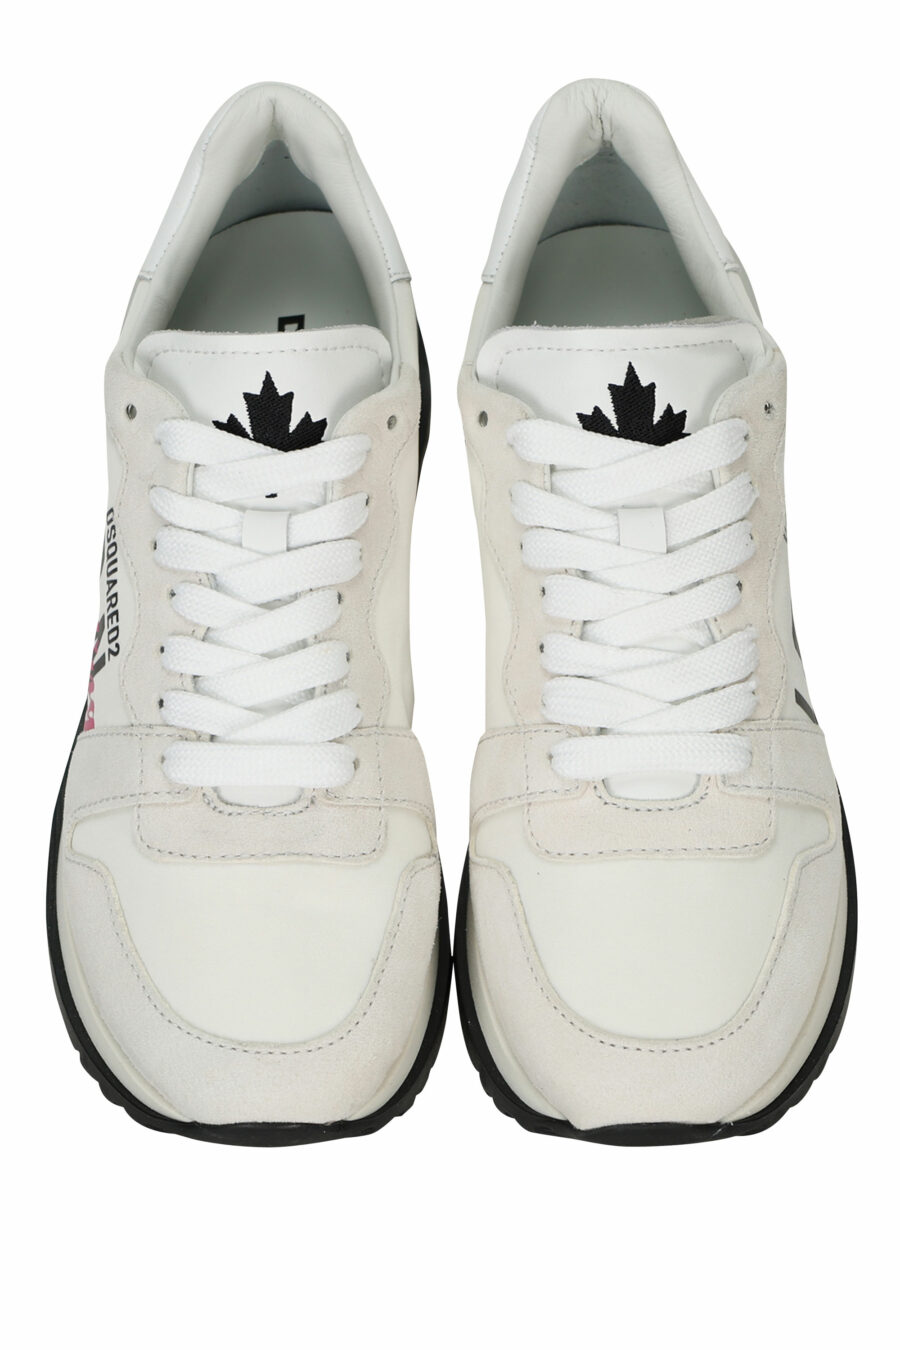 Zapatillas blancas con logo "icon darling" - 8055777310106 4